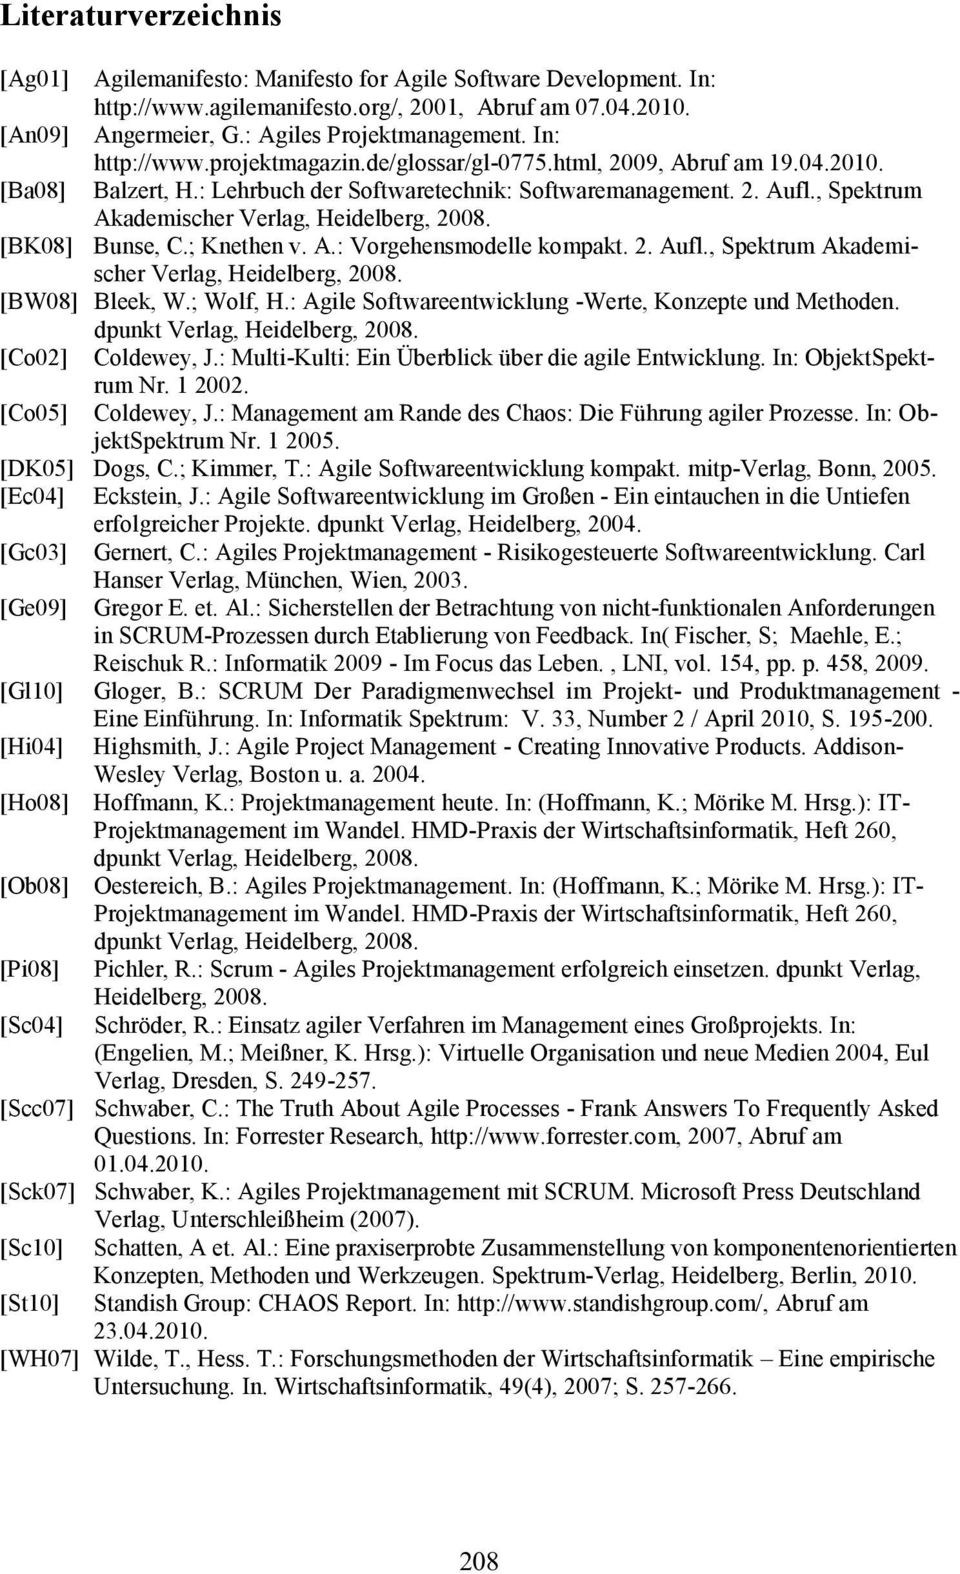 , Spektrum Akademischer Verlag, Heidelberg, 2008. [BK08] Bunse, C.;Knethen v. A.: Vorgehensmodellekompakt. 2.Aufl., SpektrumAkademischer Verlag, Heidelberg, 2008. [BW08] Bleek, W.; Wolf, H.